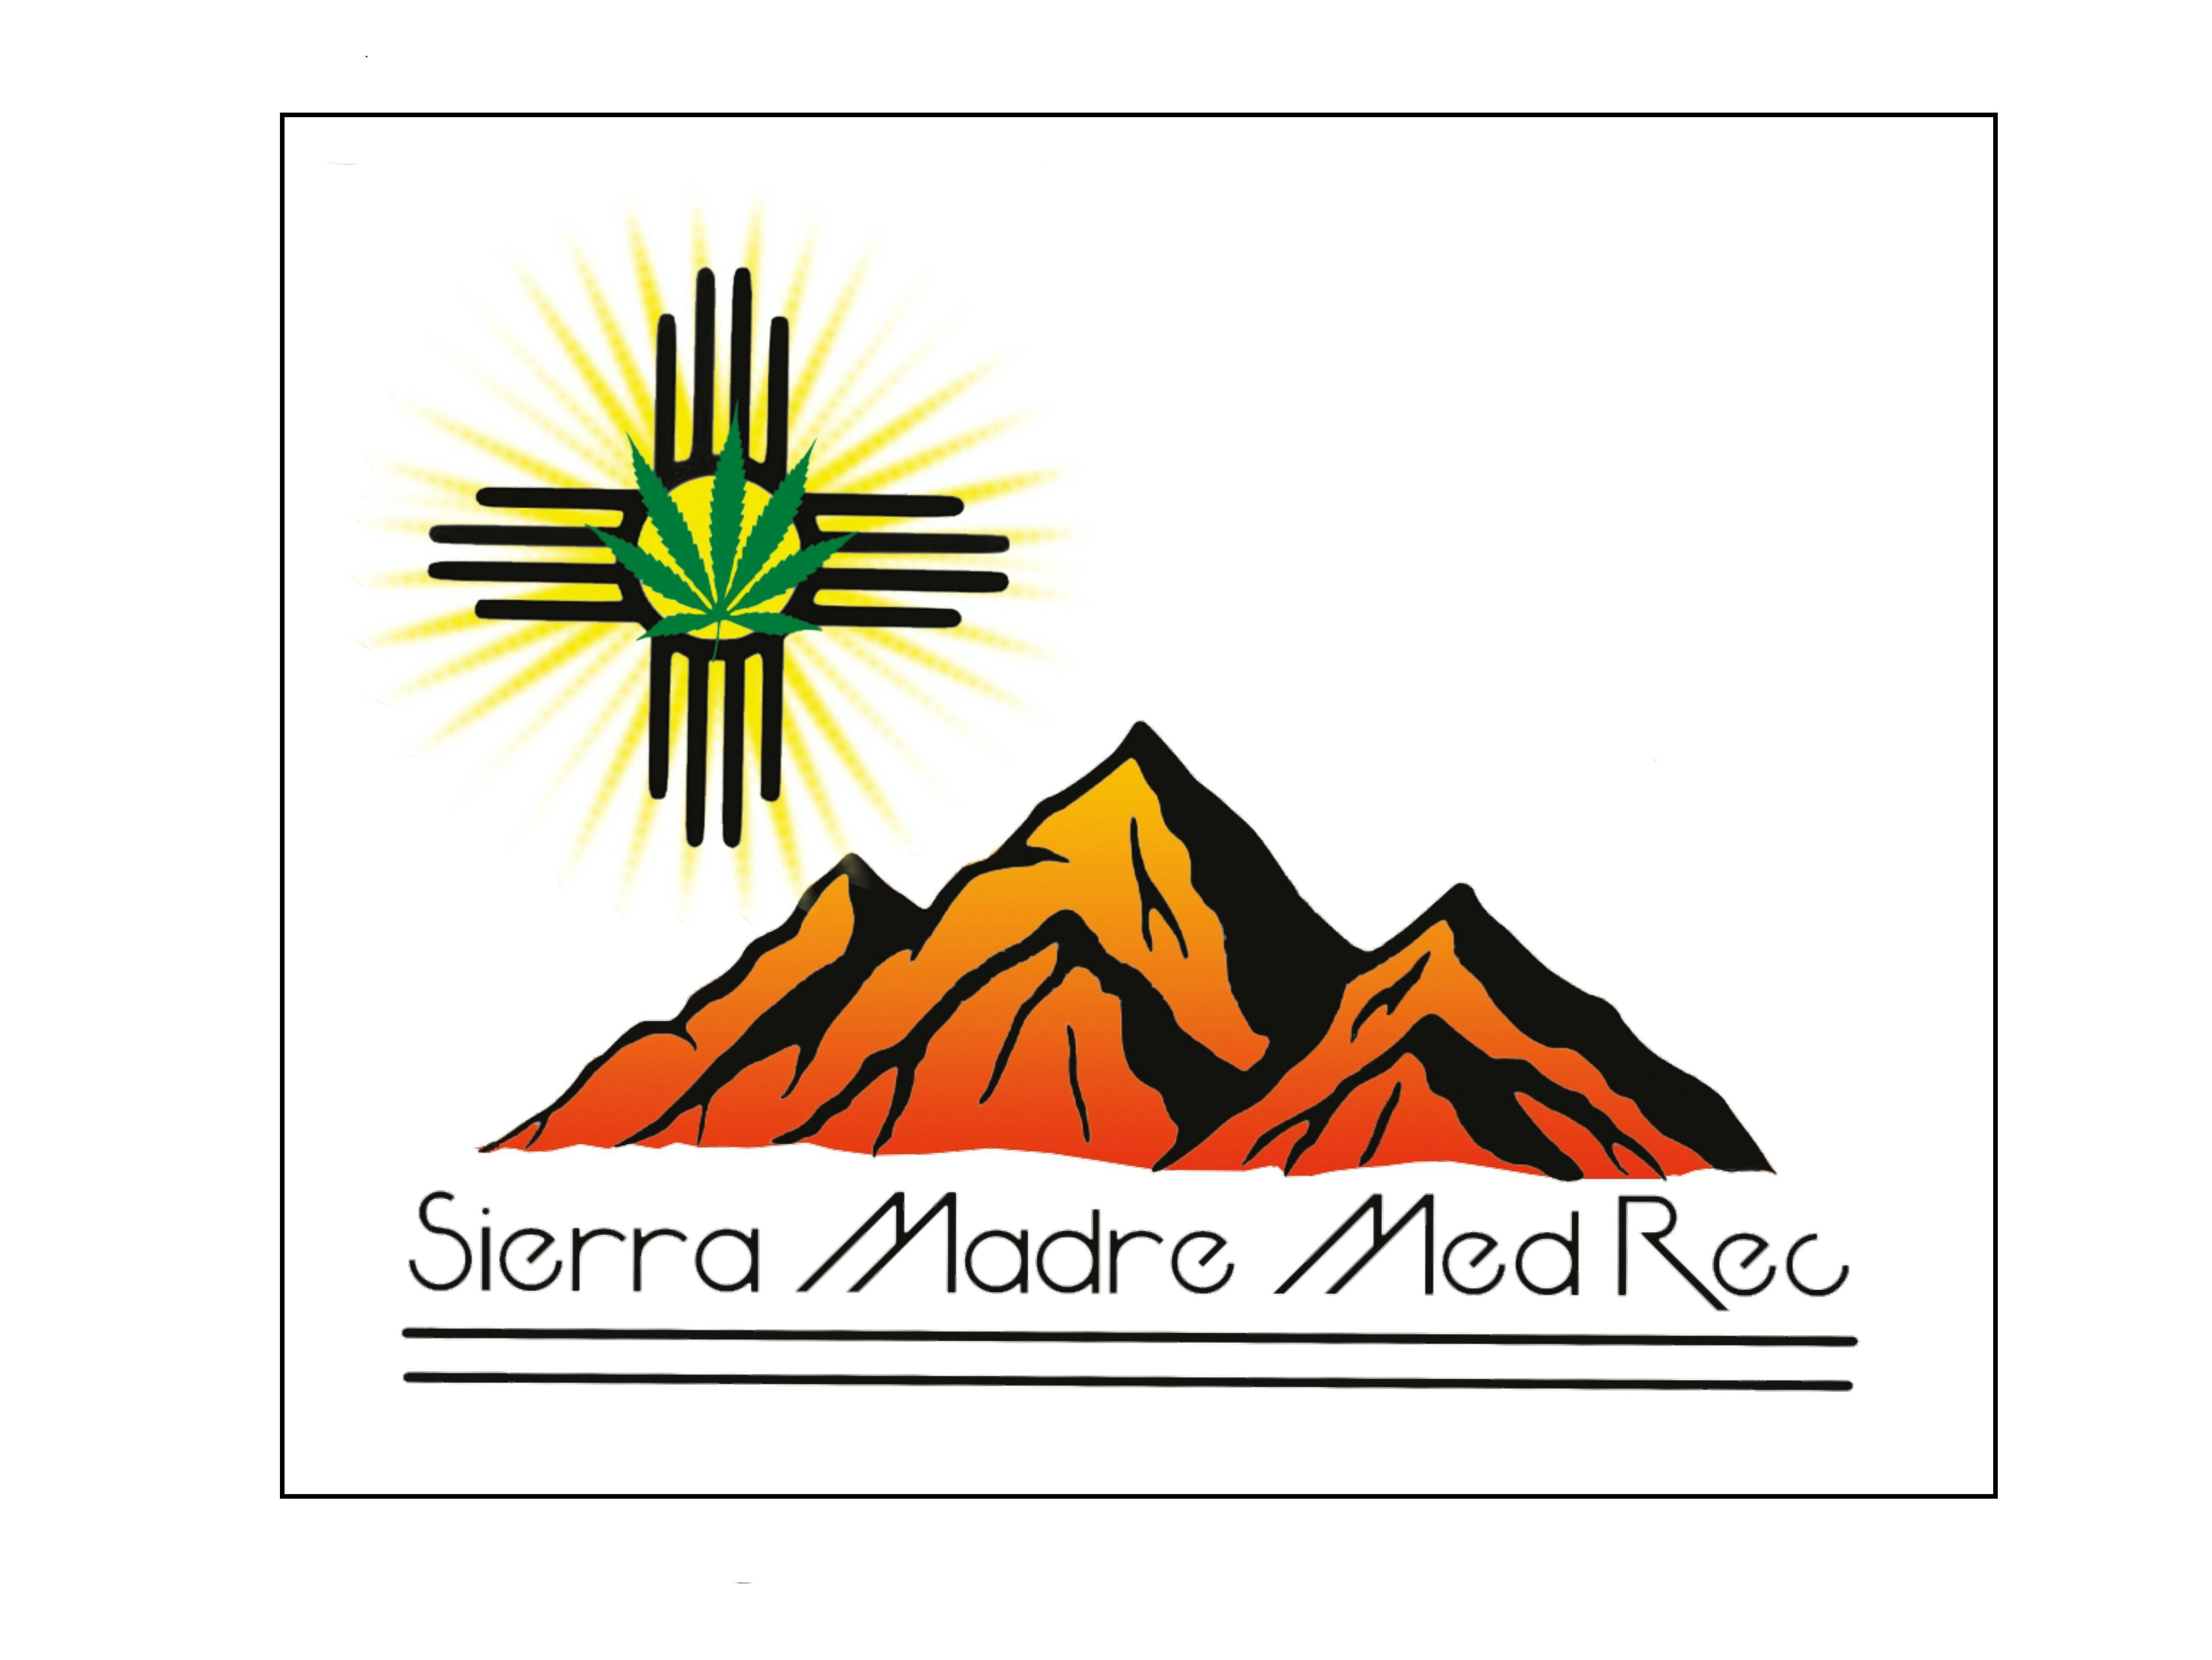 Sierra Madre Med. Rec.